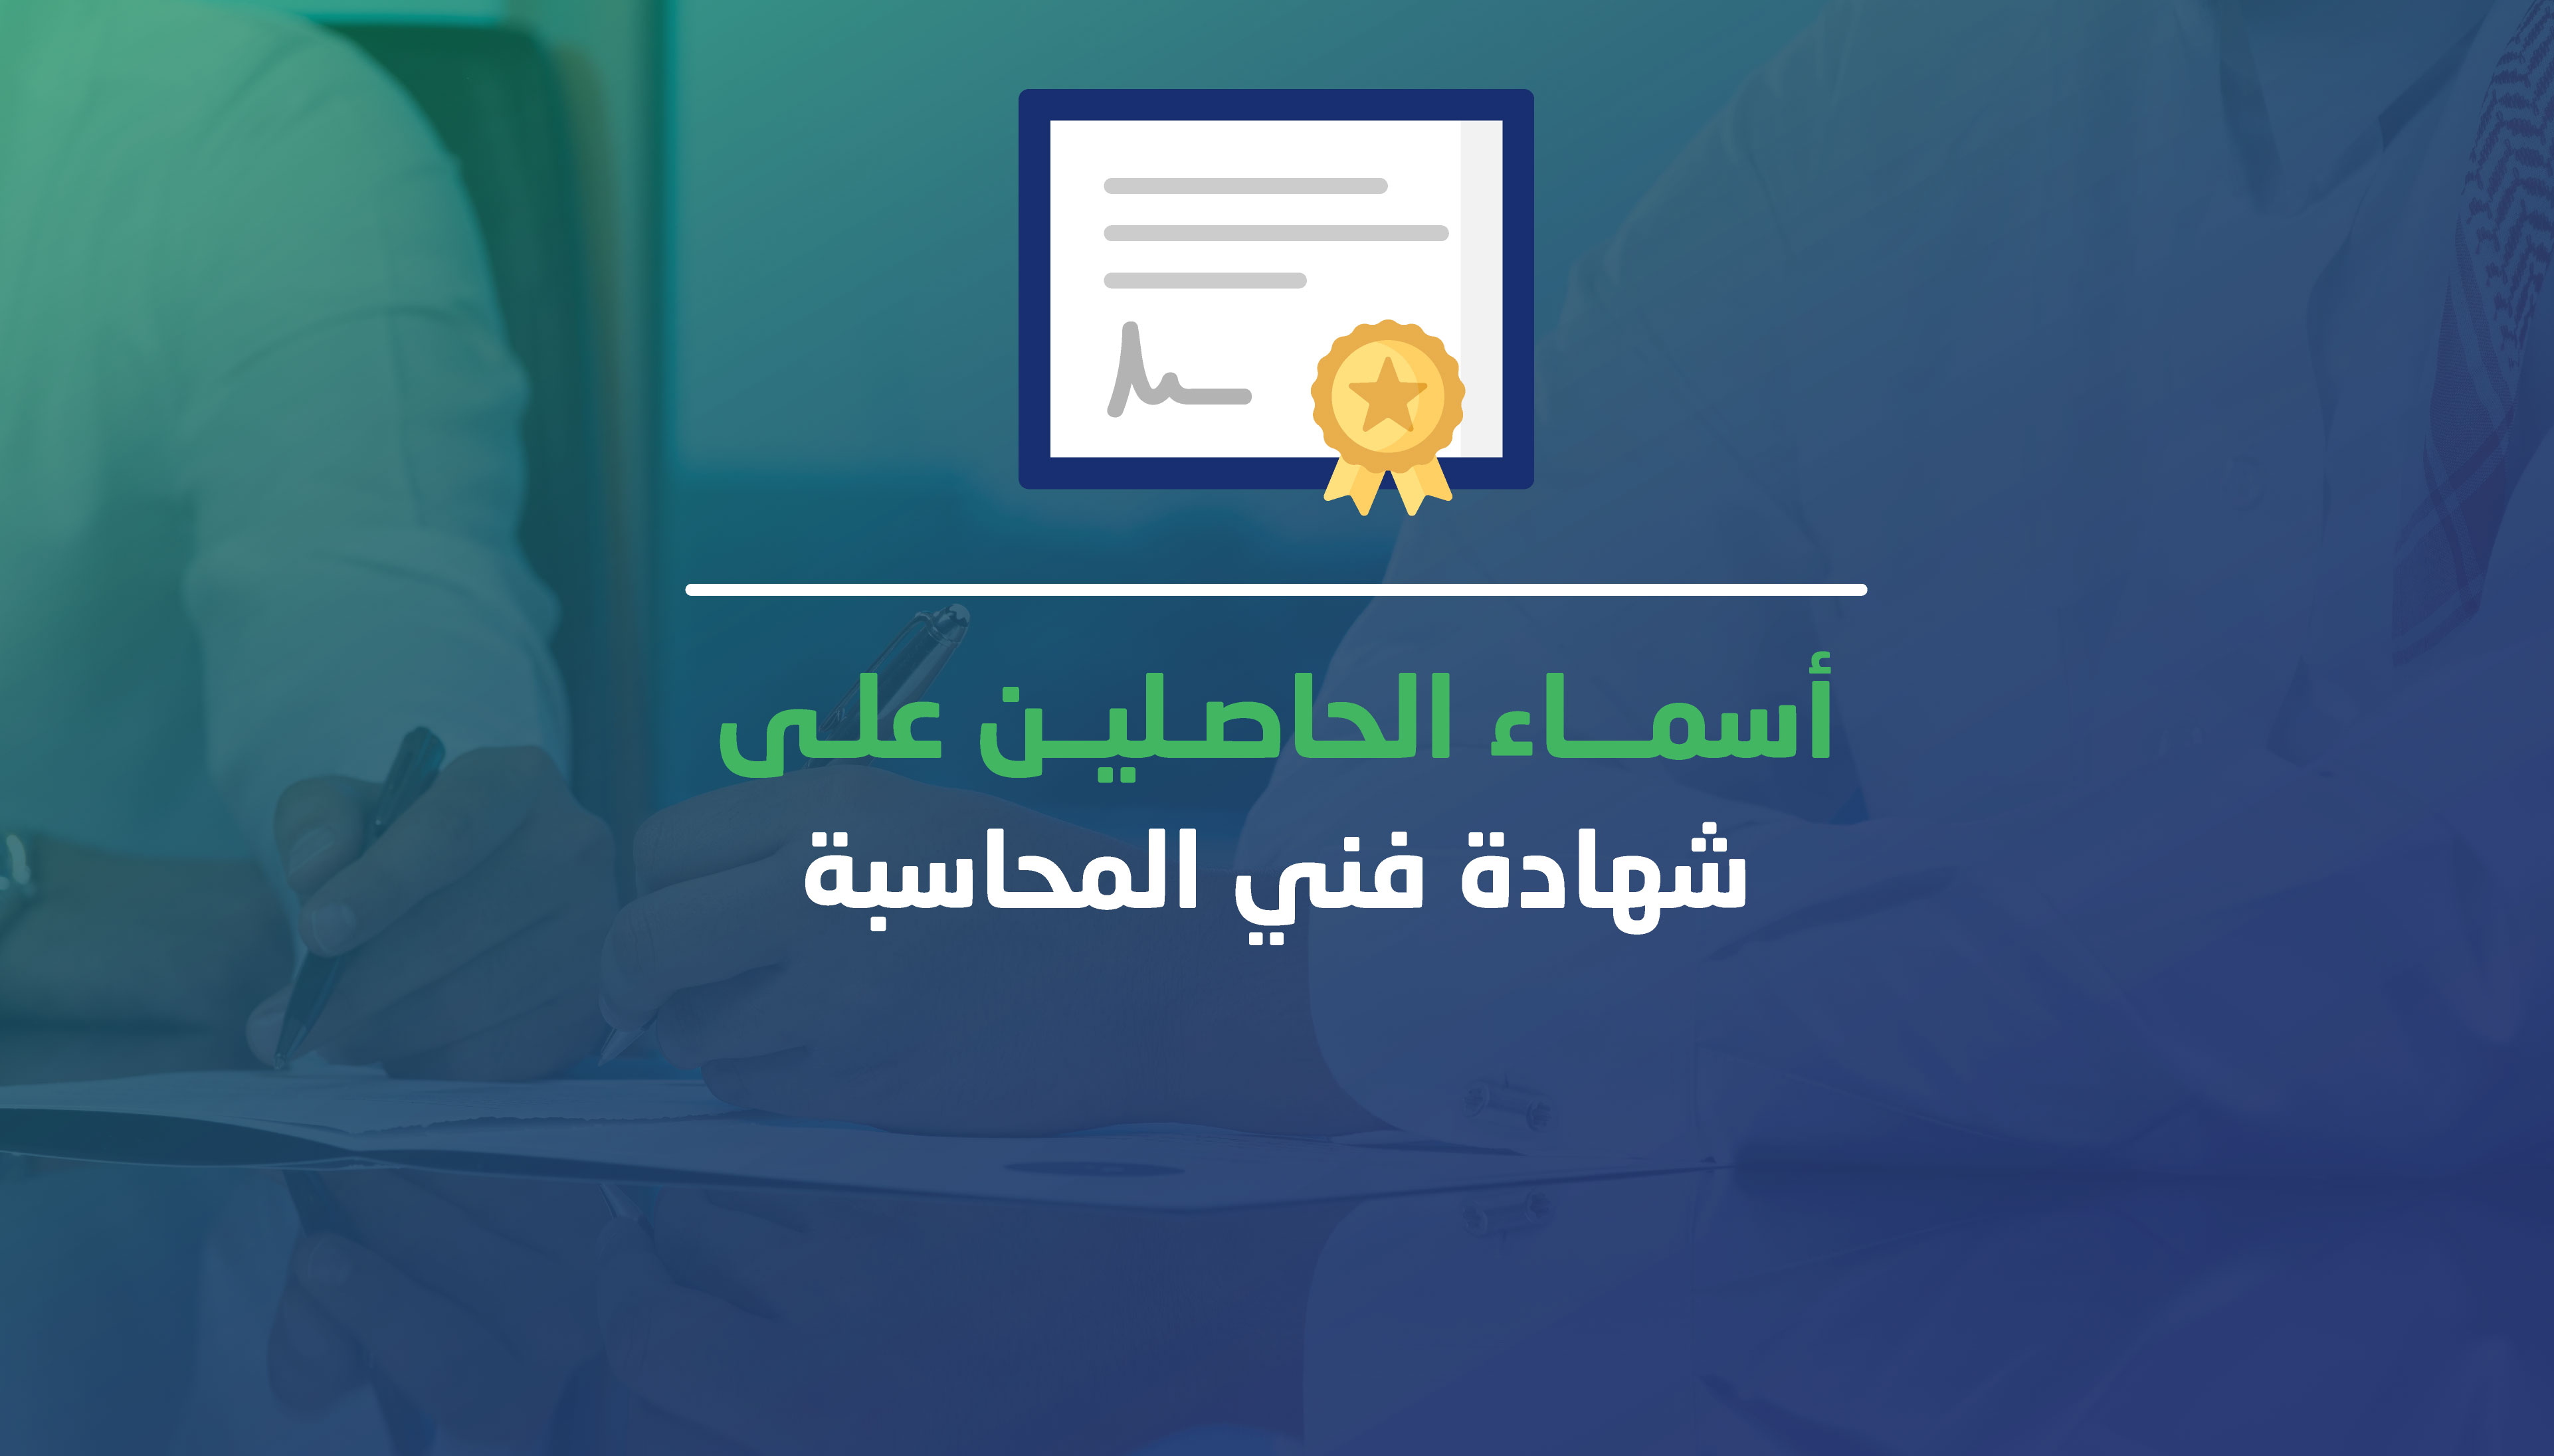 الهيئة تنشر أسماء الحاصلين على شهادة فني المحاسبة